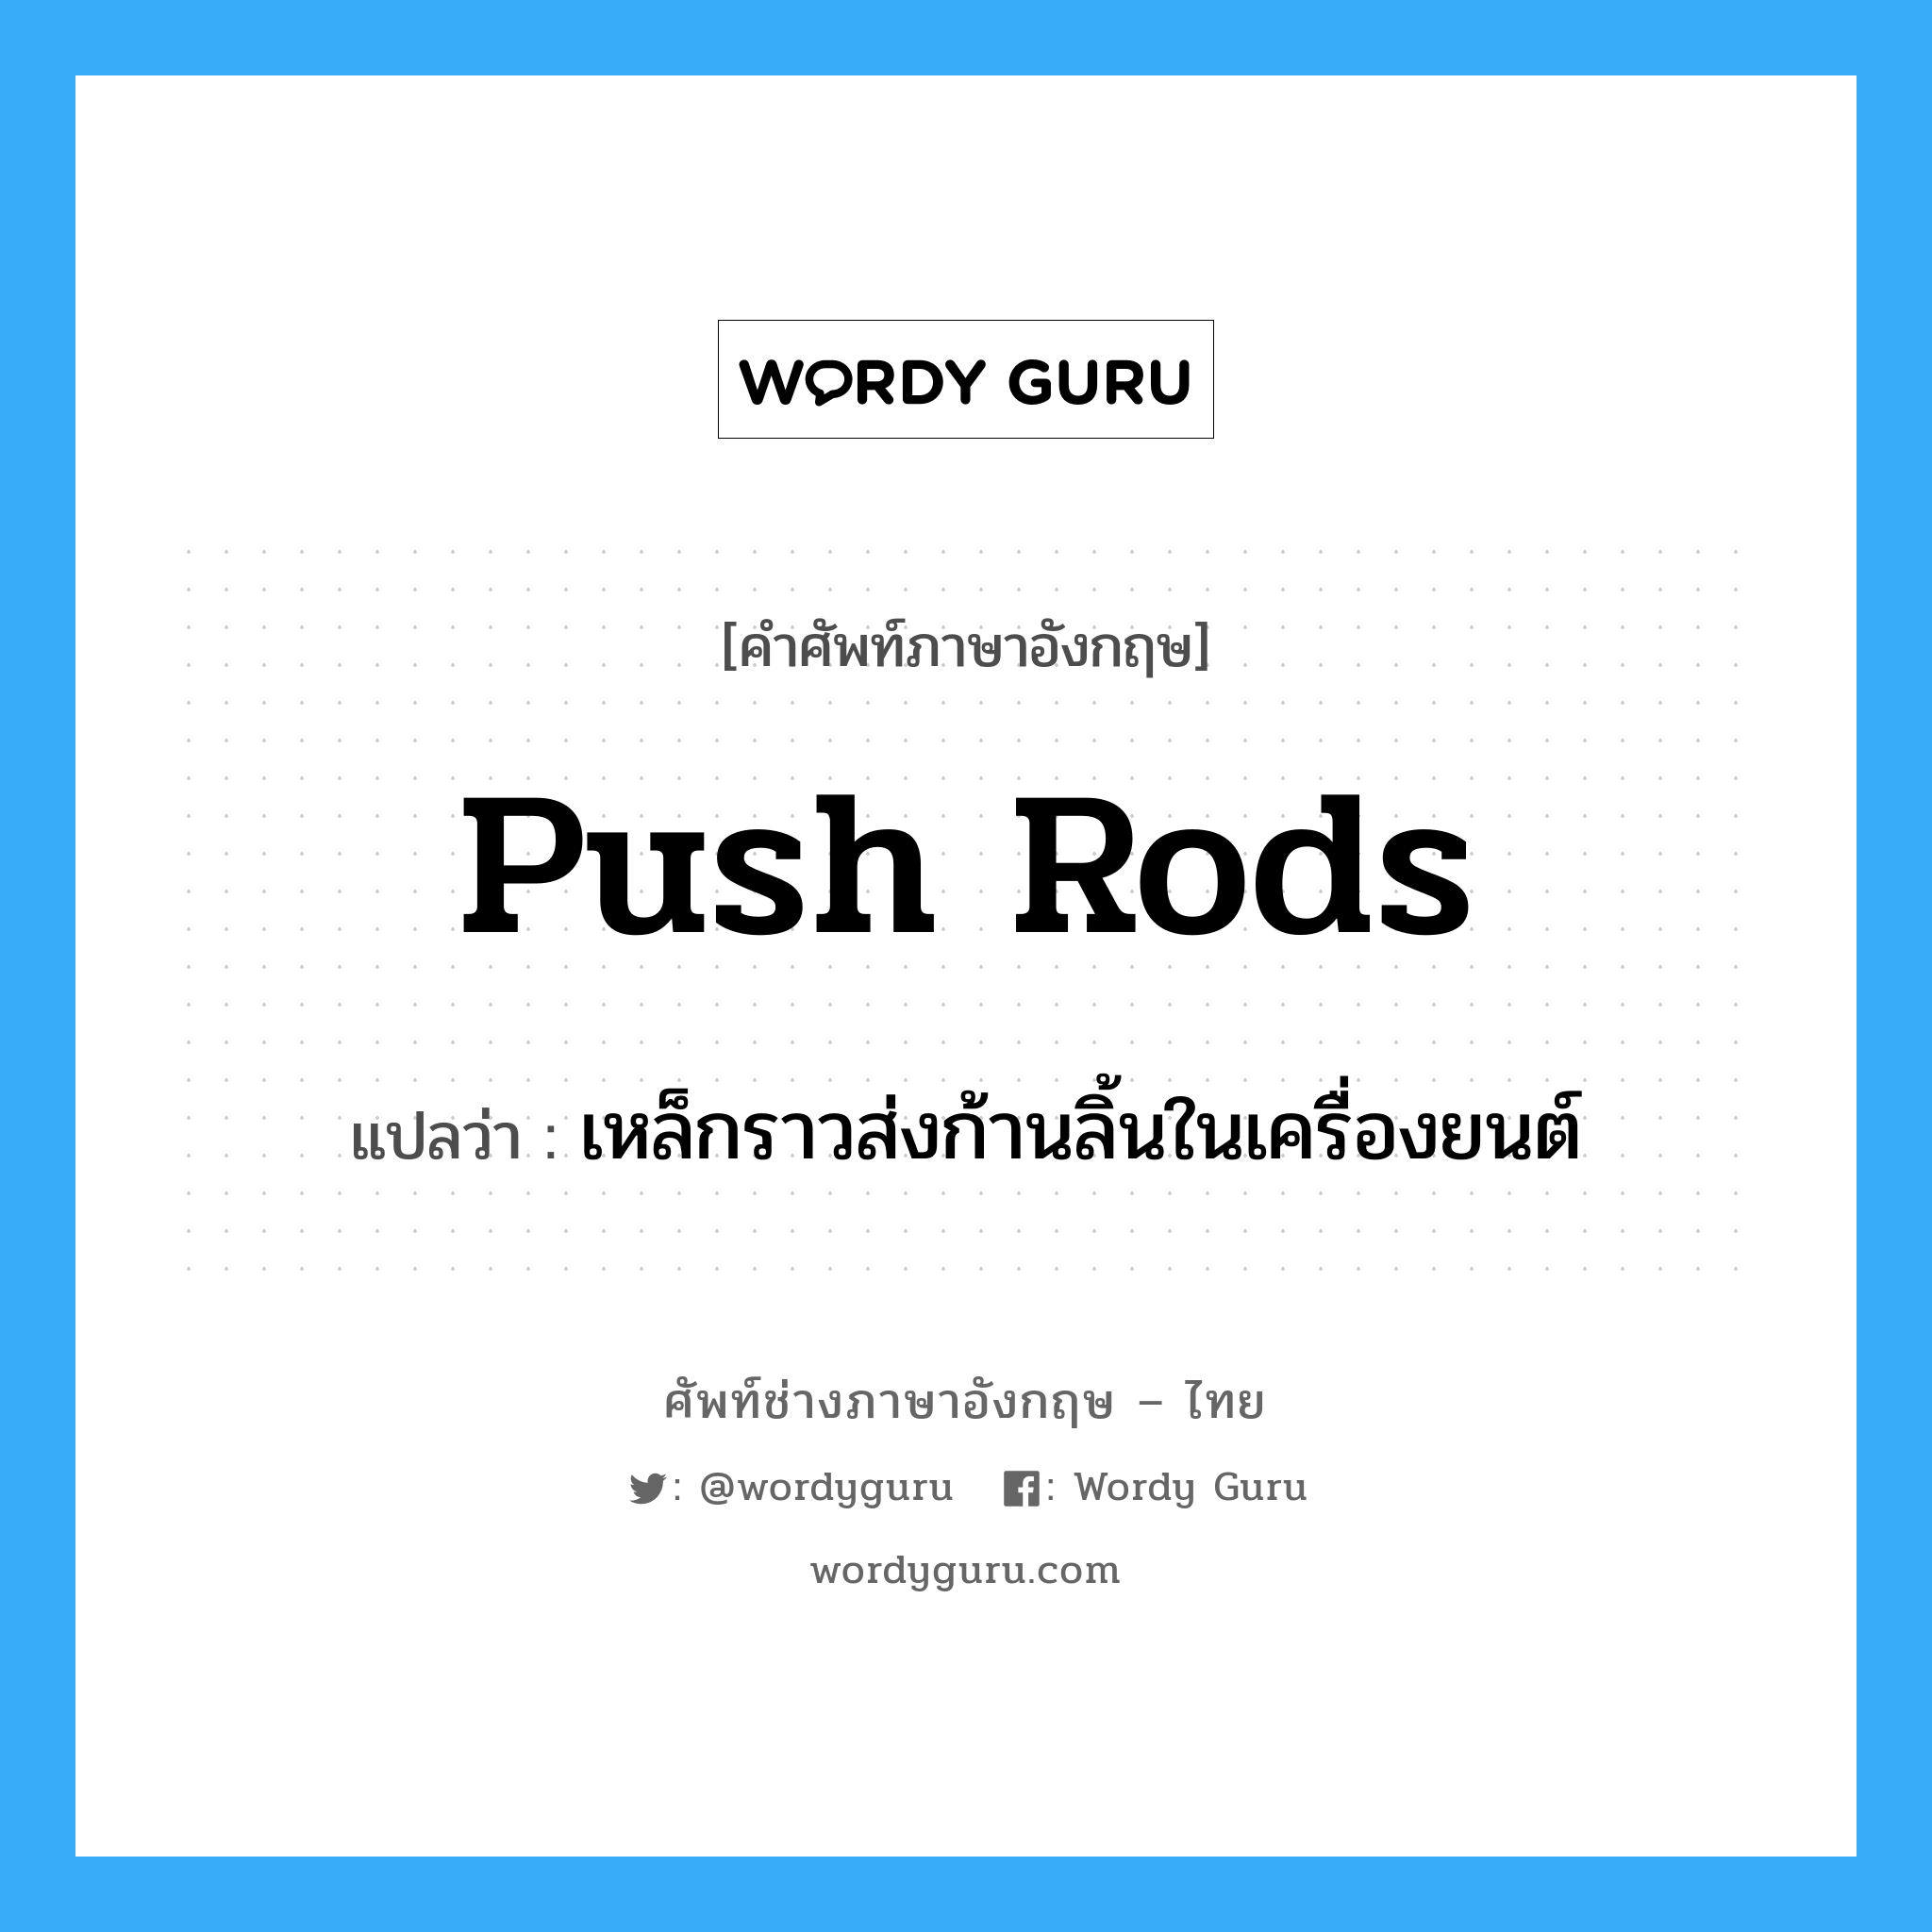 push rods แปลว่า?, คำศัพท์ช่างภาษาอังกฤษ - ไทย push rods คำศัพท์ภาษาอังกฤษ push rods แปลว่า เหล็กราวส่งก้านลิ้นในเครื่องยนต์